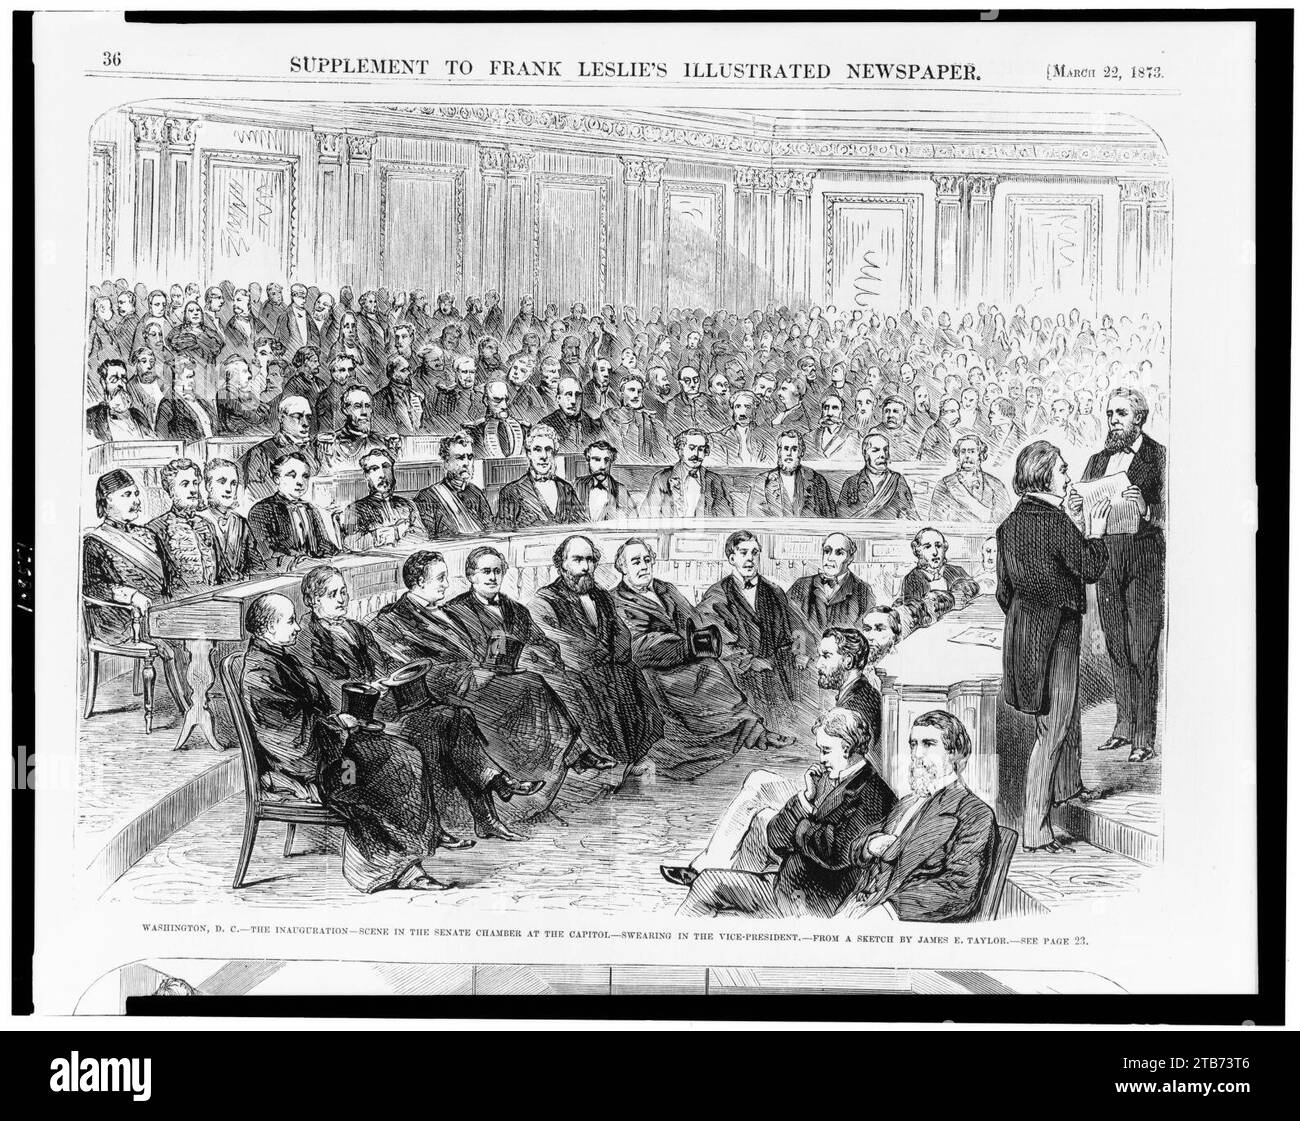 Washington, D.C. - la scena dell'inaugurazione nella camera del Senato del Campidoglio - giuramento nel vicepresidente - da uno schizzo di James E. Taylor. Foto Stock